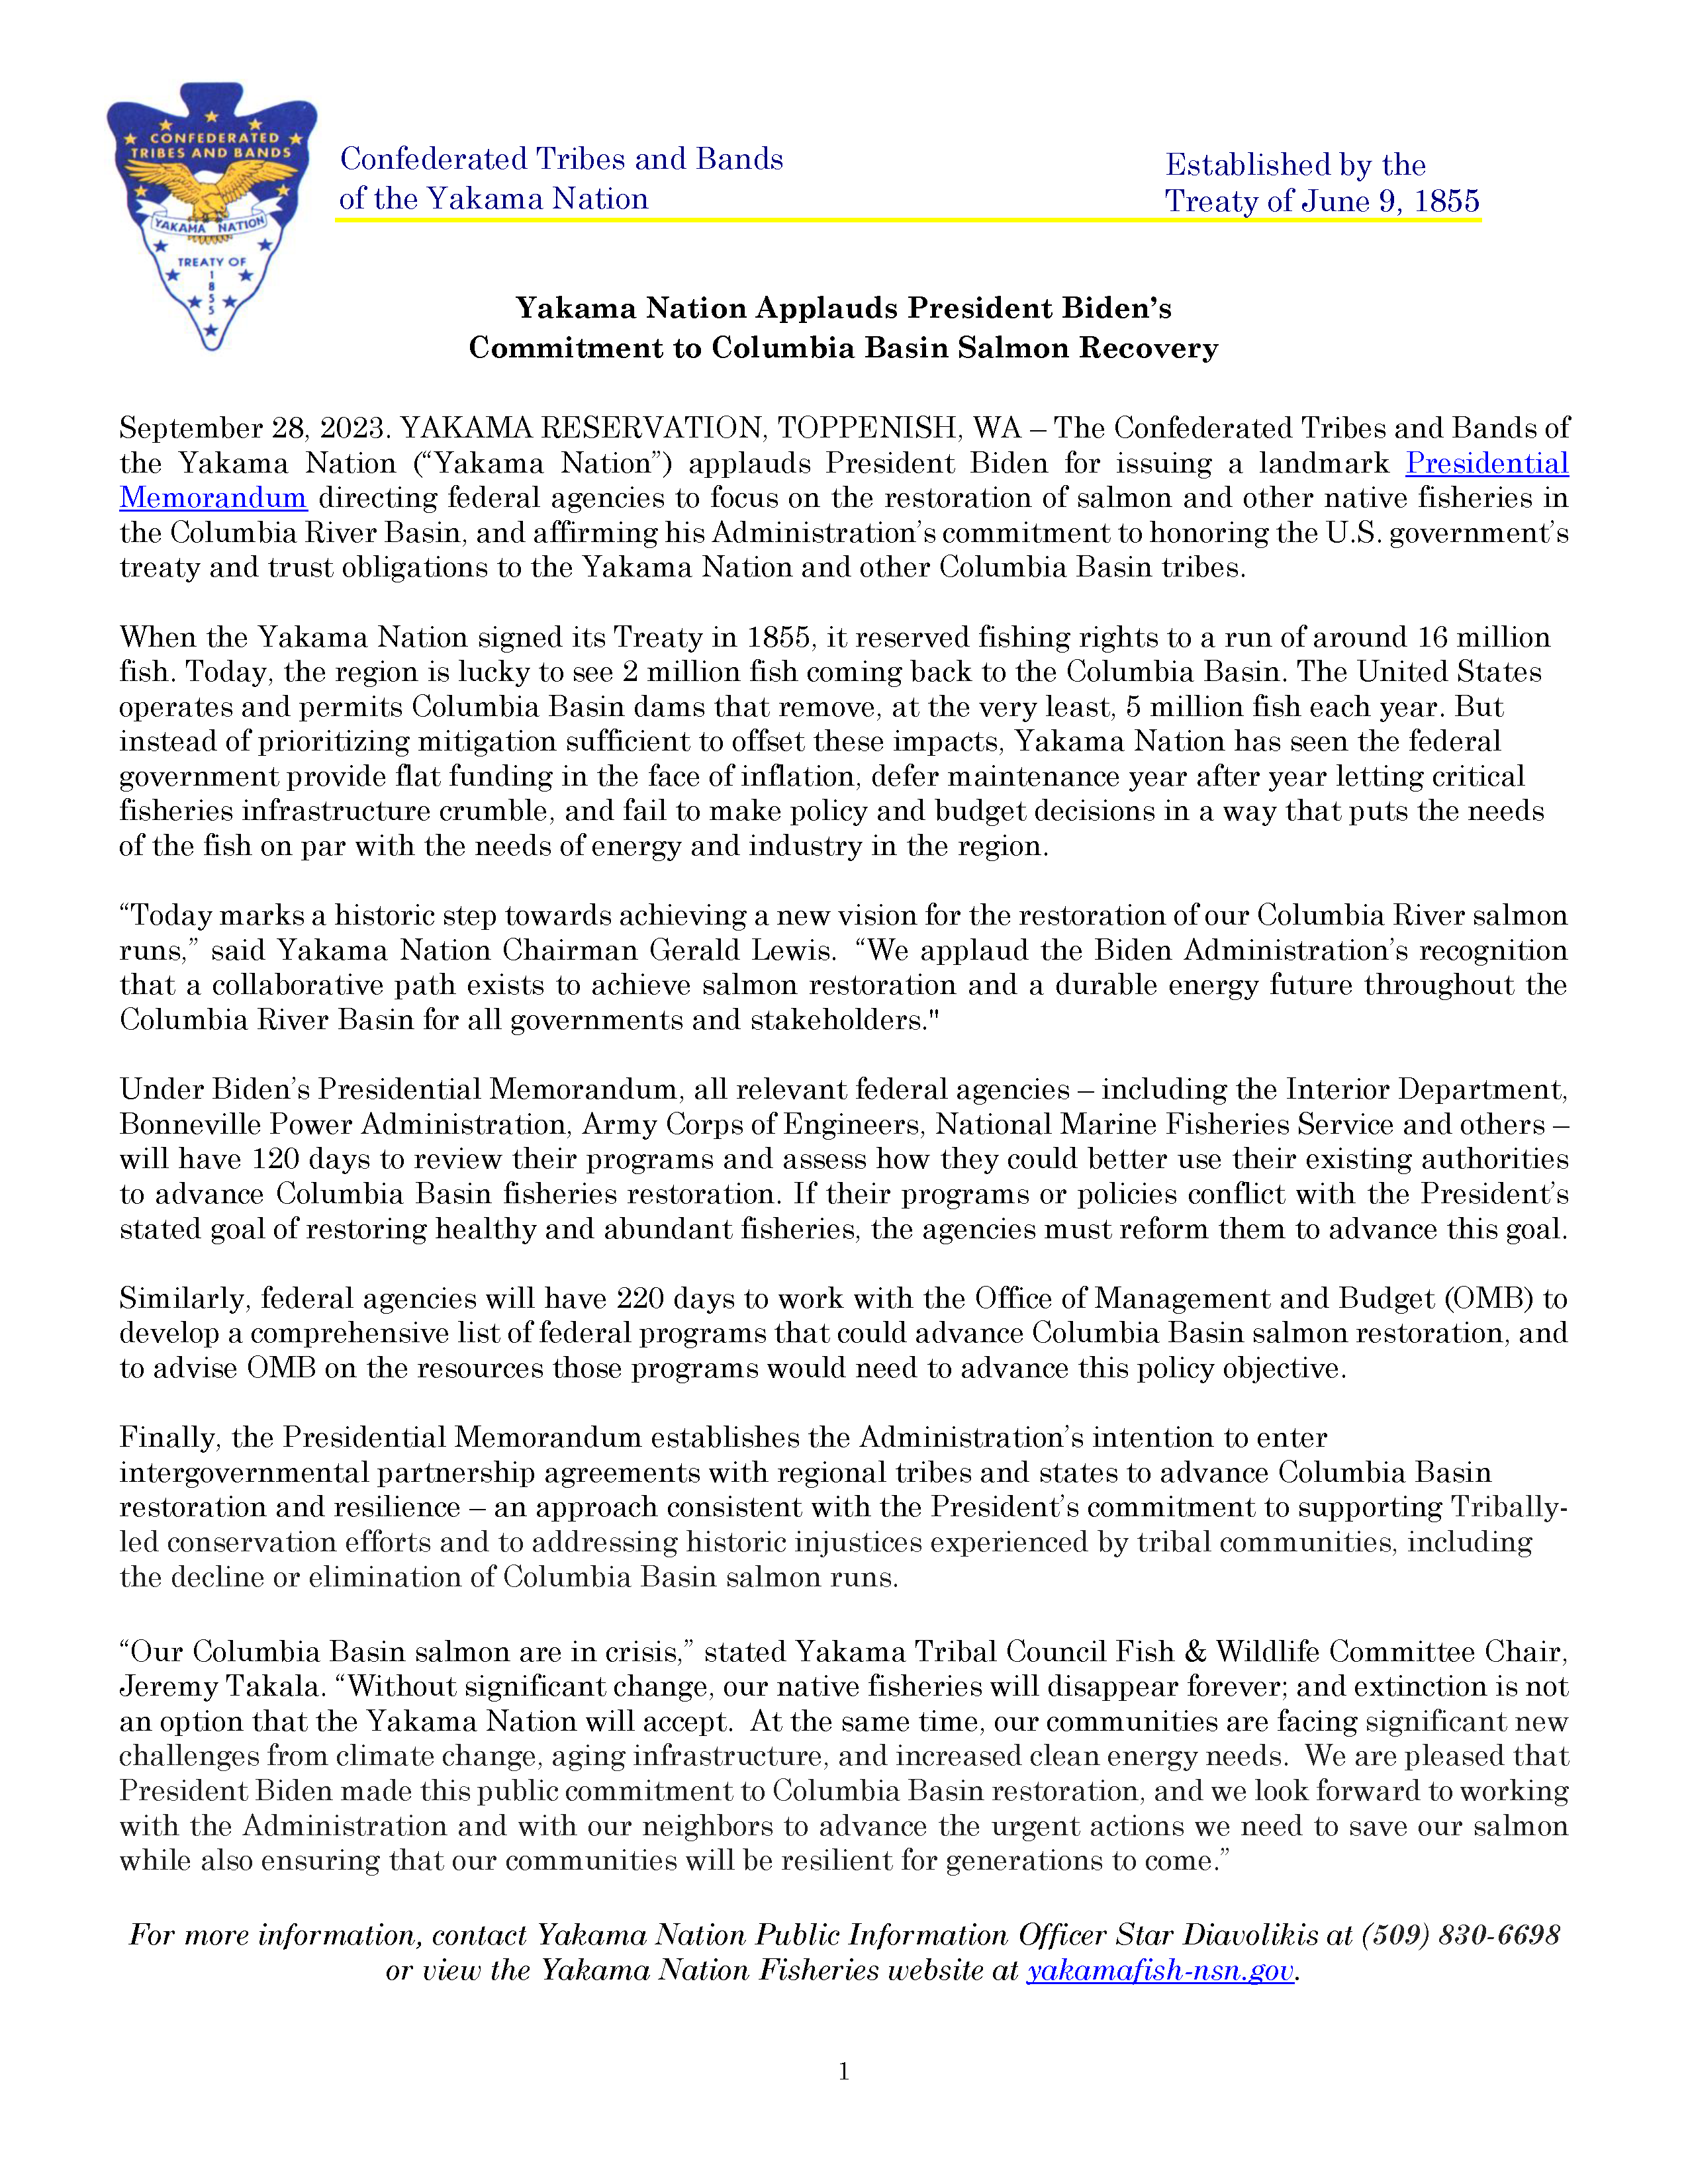 YN press release document, Biden salmon recovery